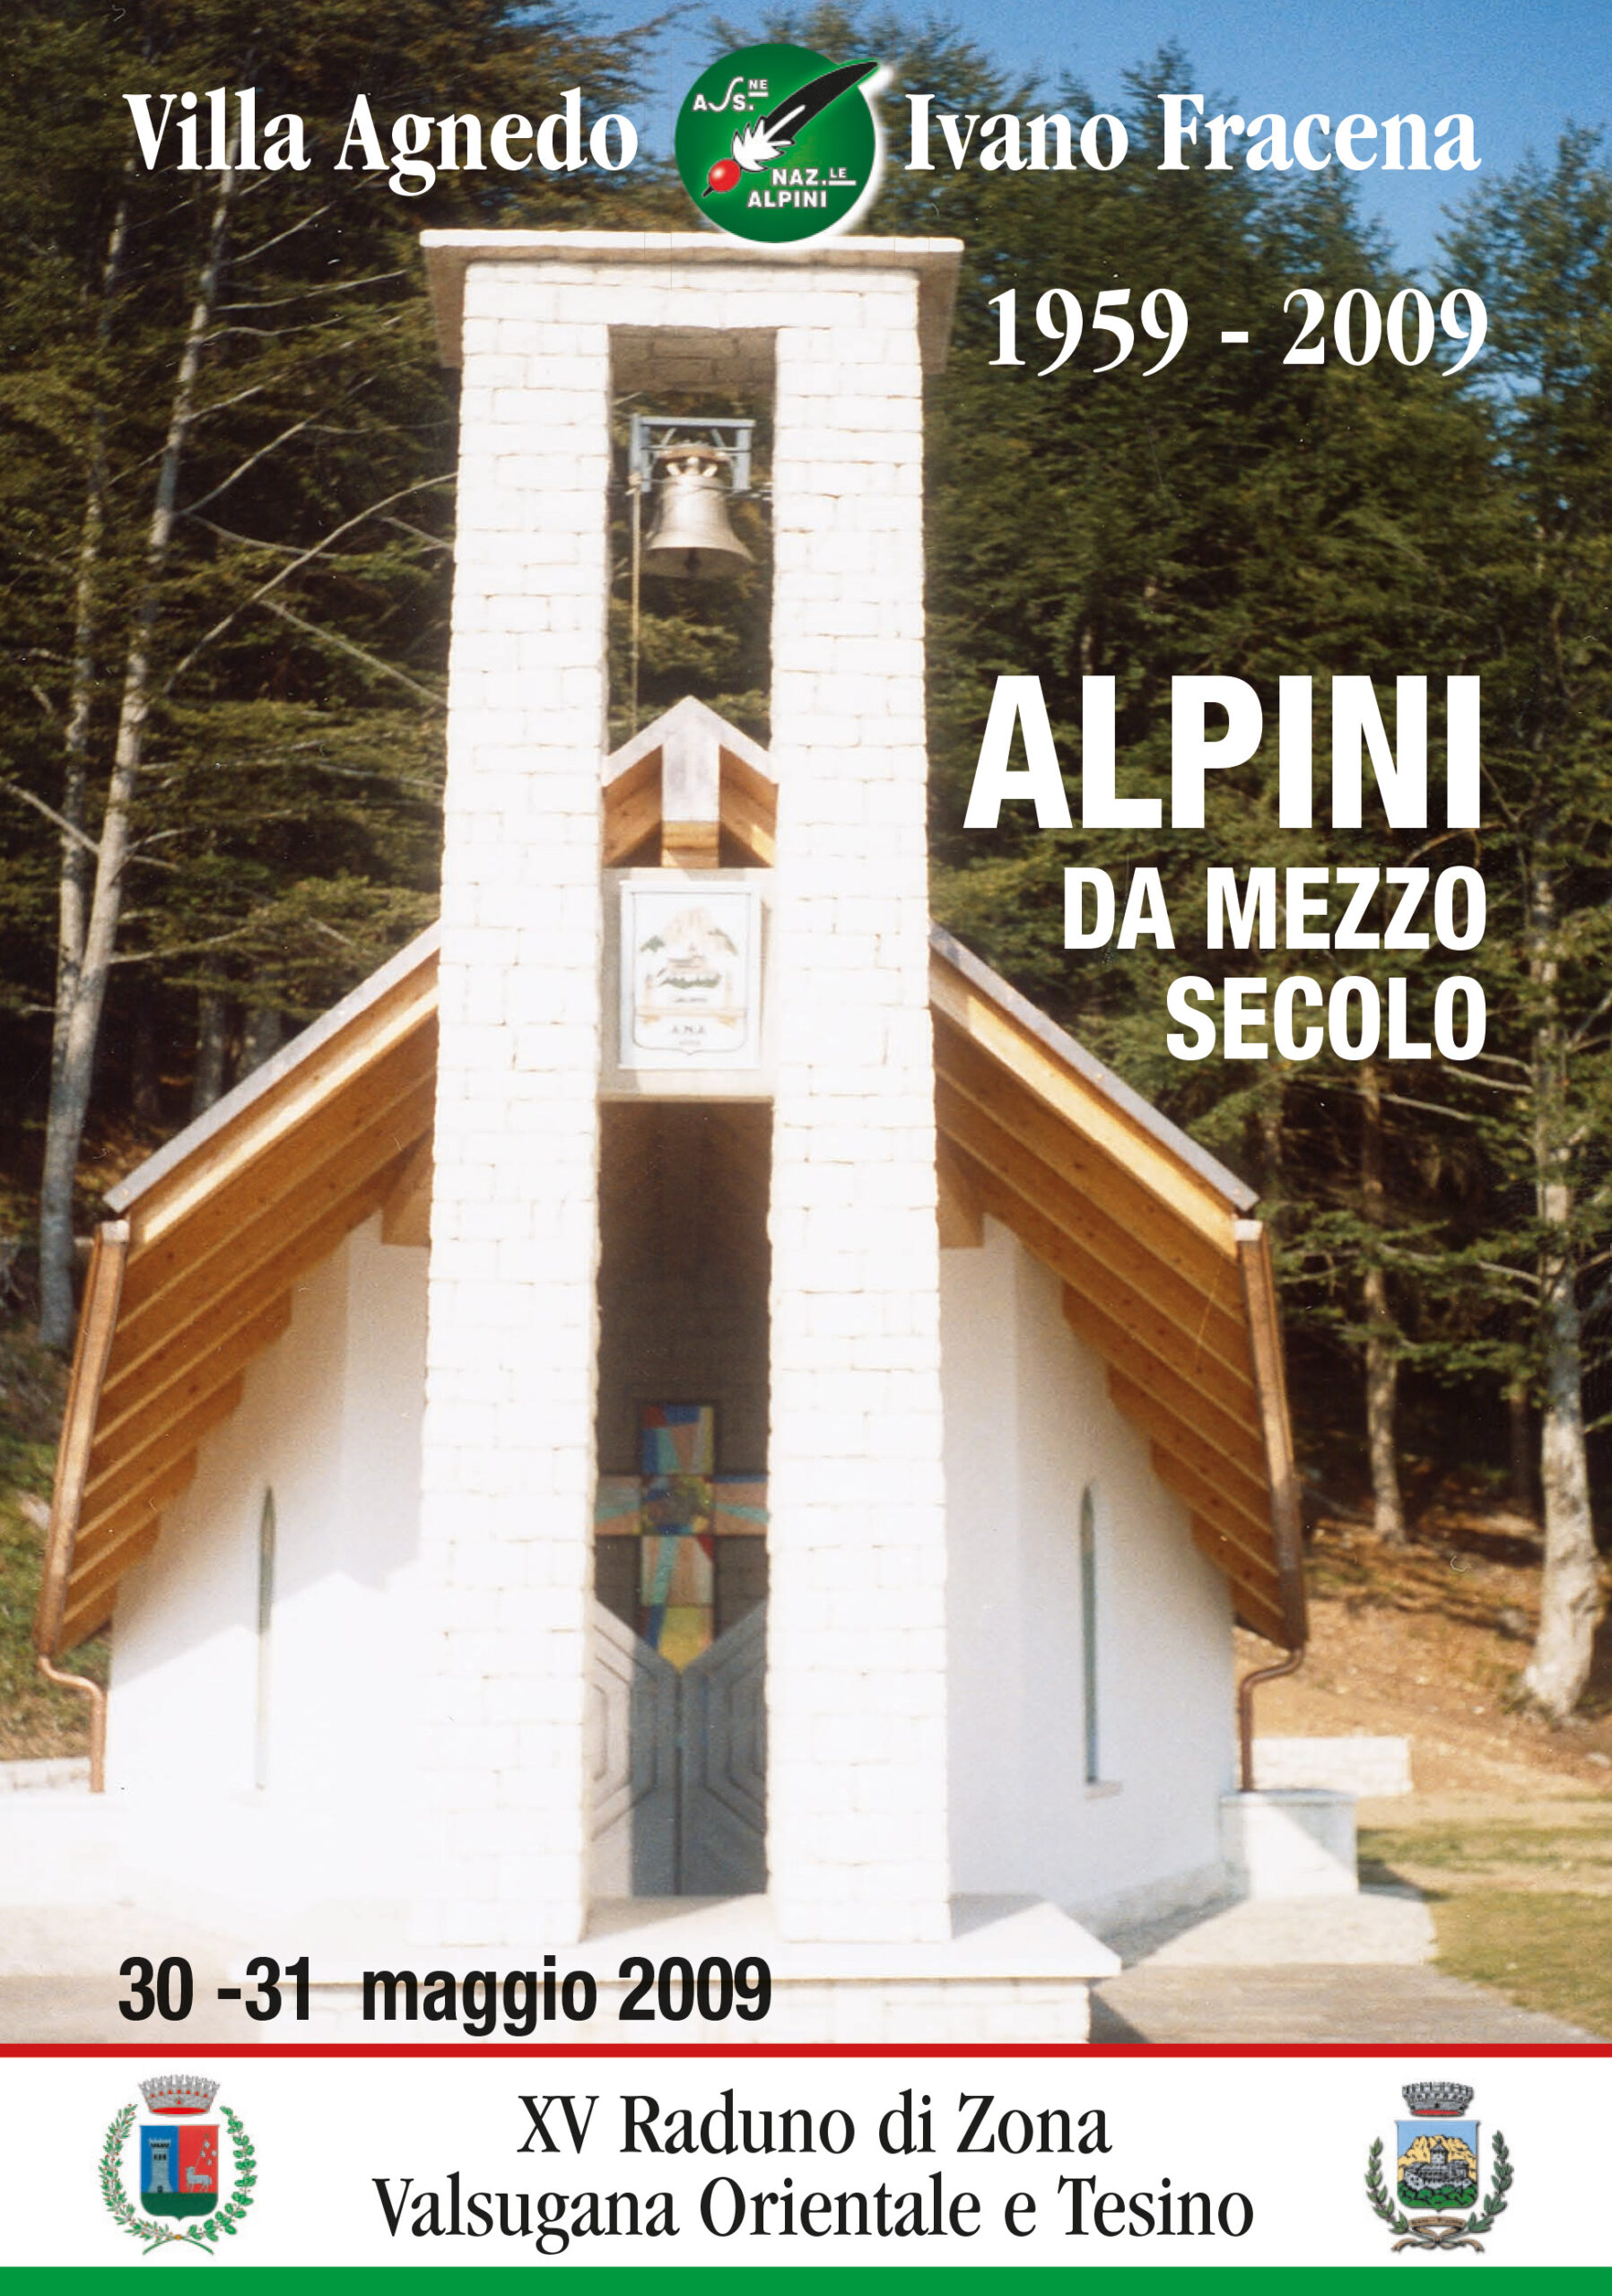 Villa Agnedo Ivano Fracena 1959-2009. Alpini da mezzo secolo